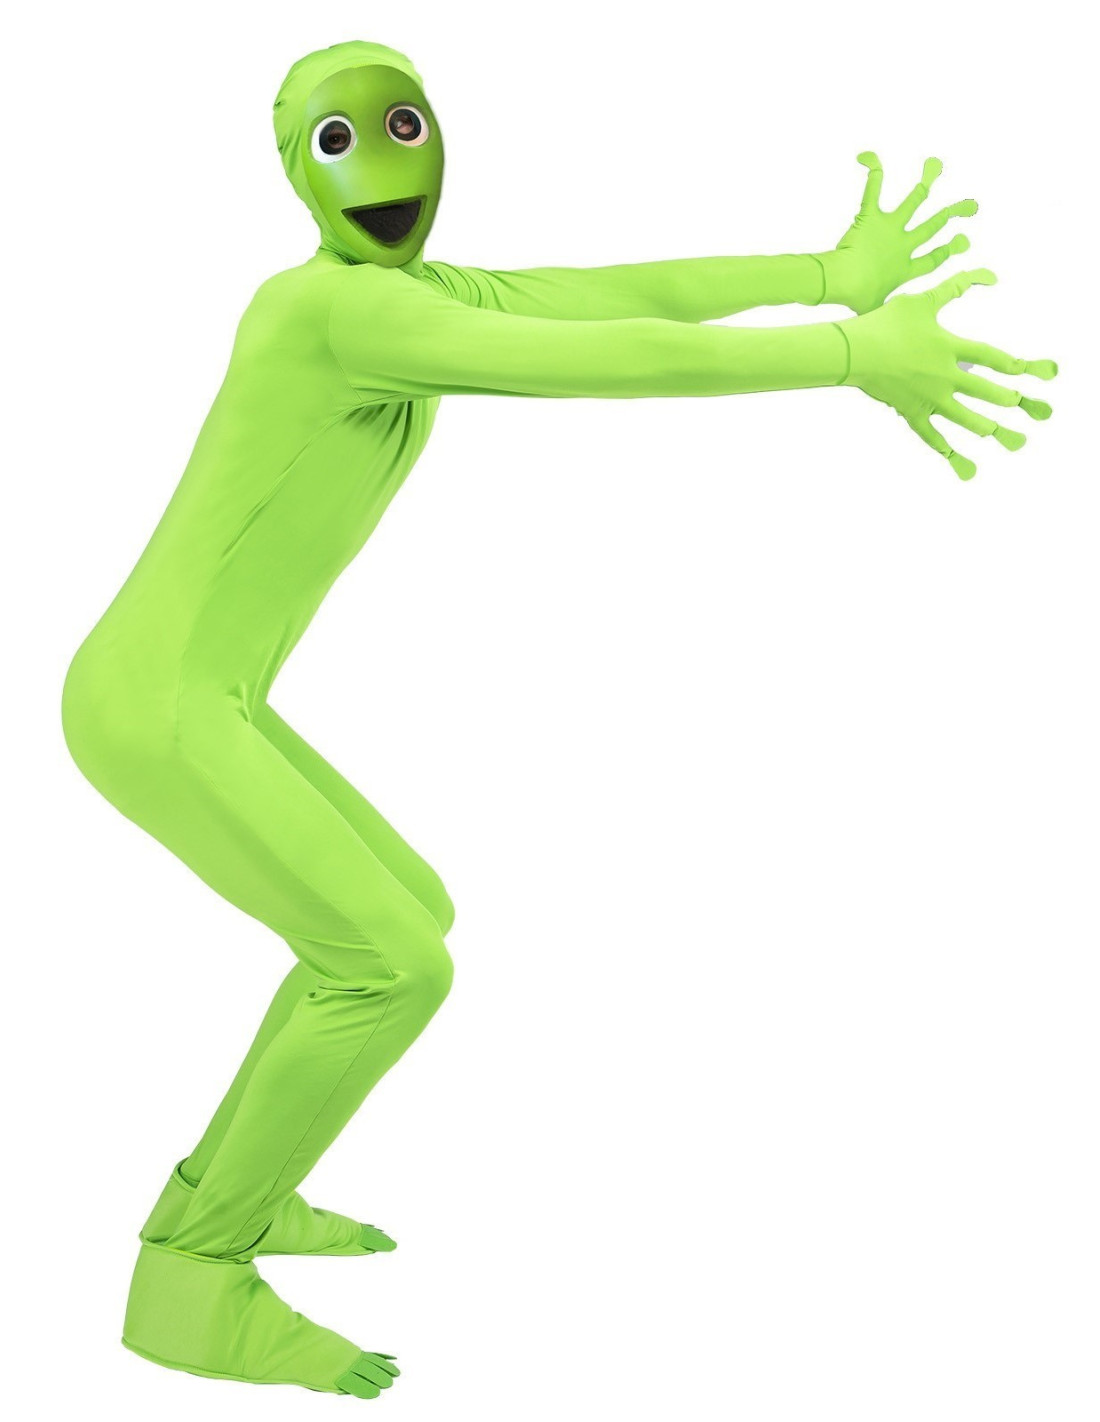 Disfraz de Alien Verde con capa para adolescentes